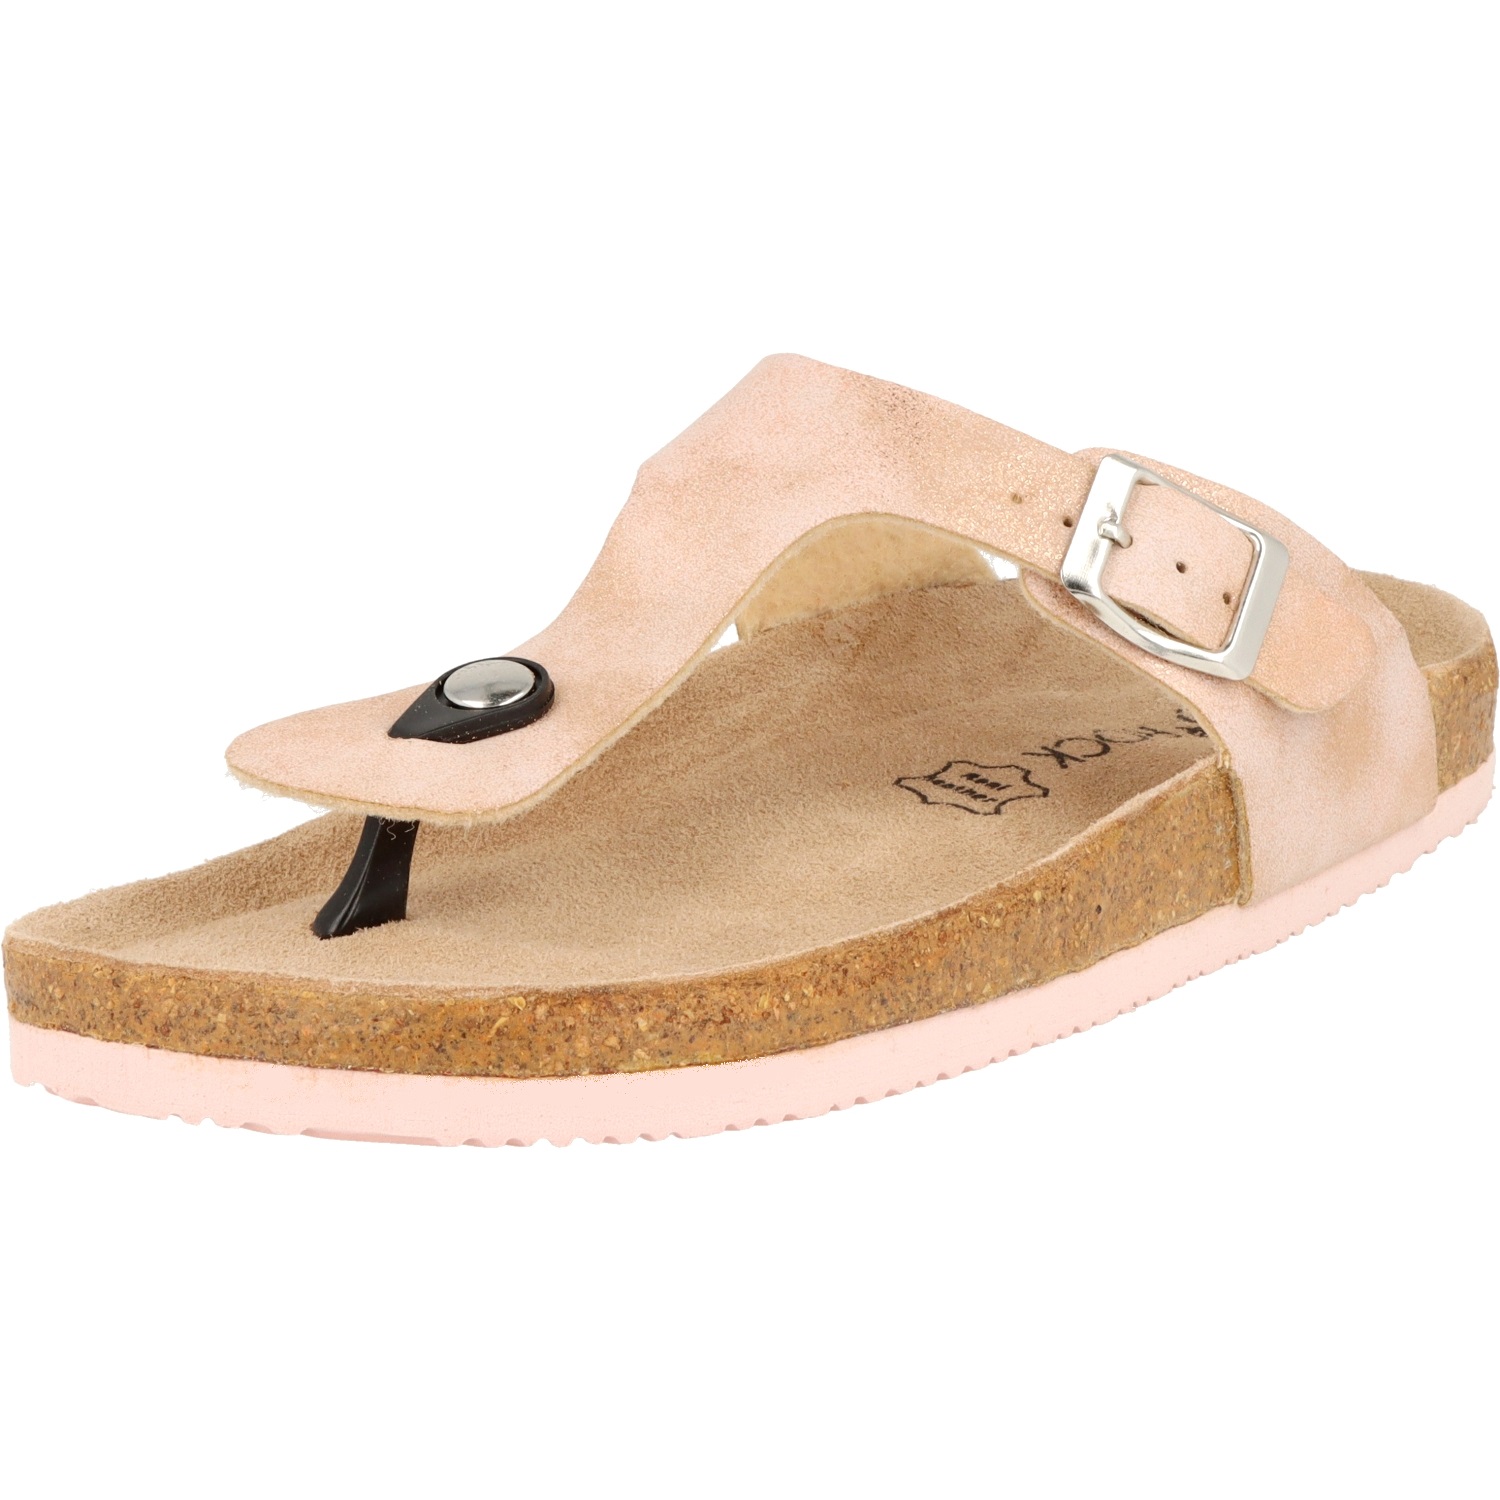 BioRock T30055 Damen Schuhe Sandalen Zehentrenner Hausschuhe Lederfußbett Rosé